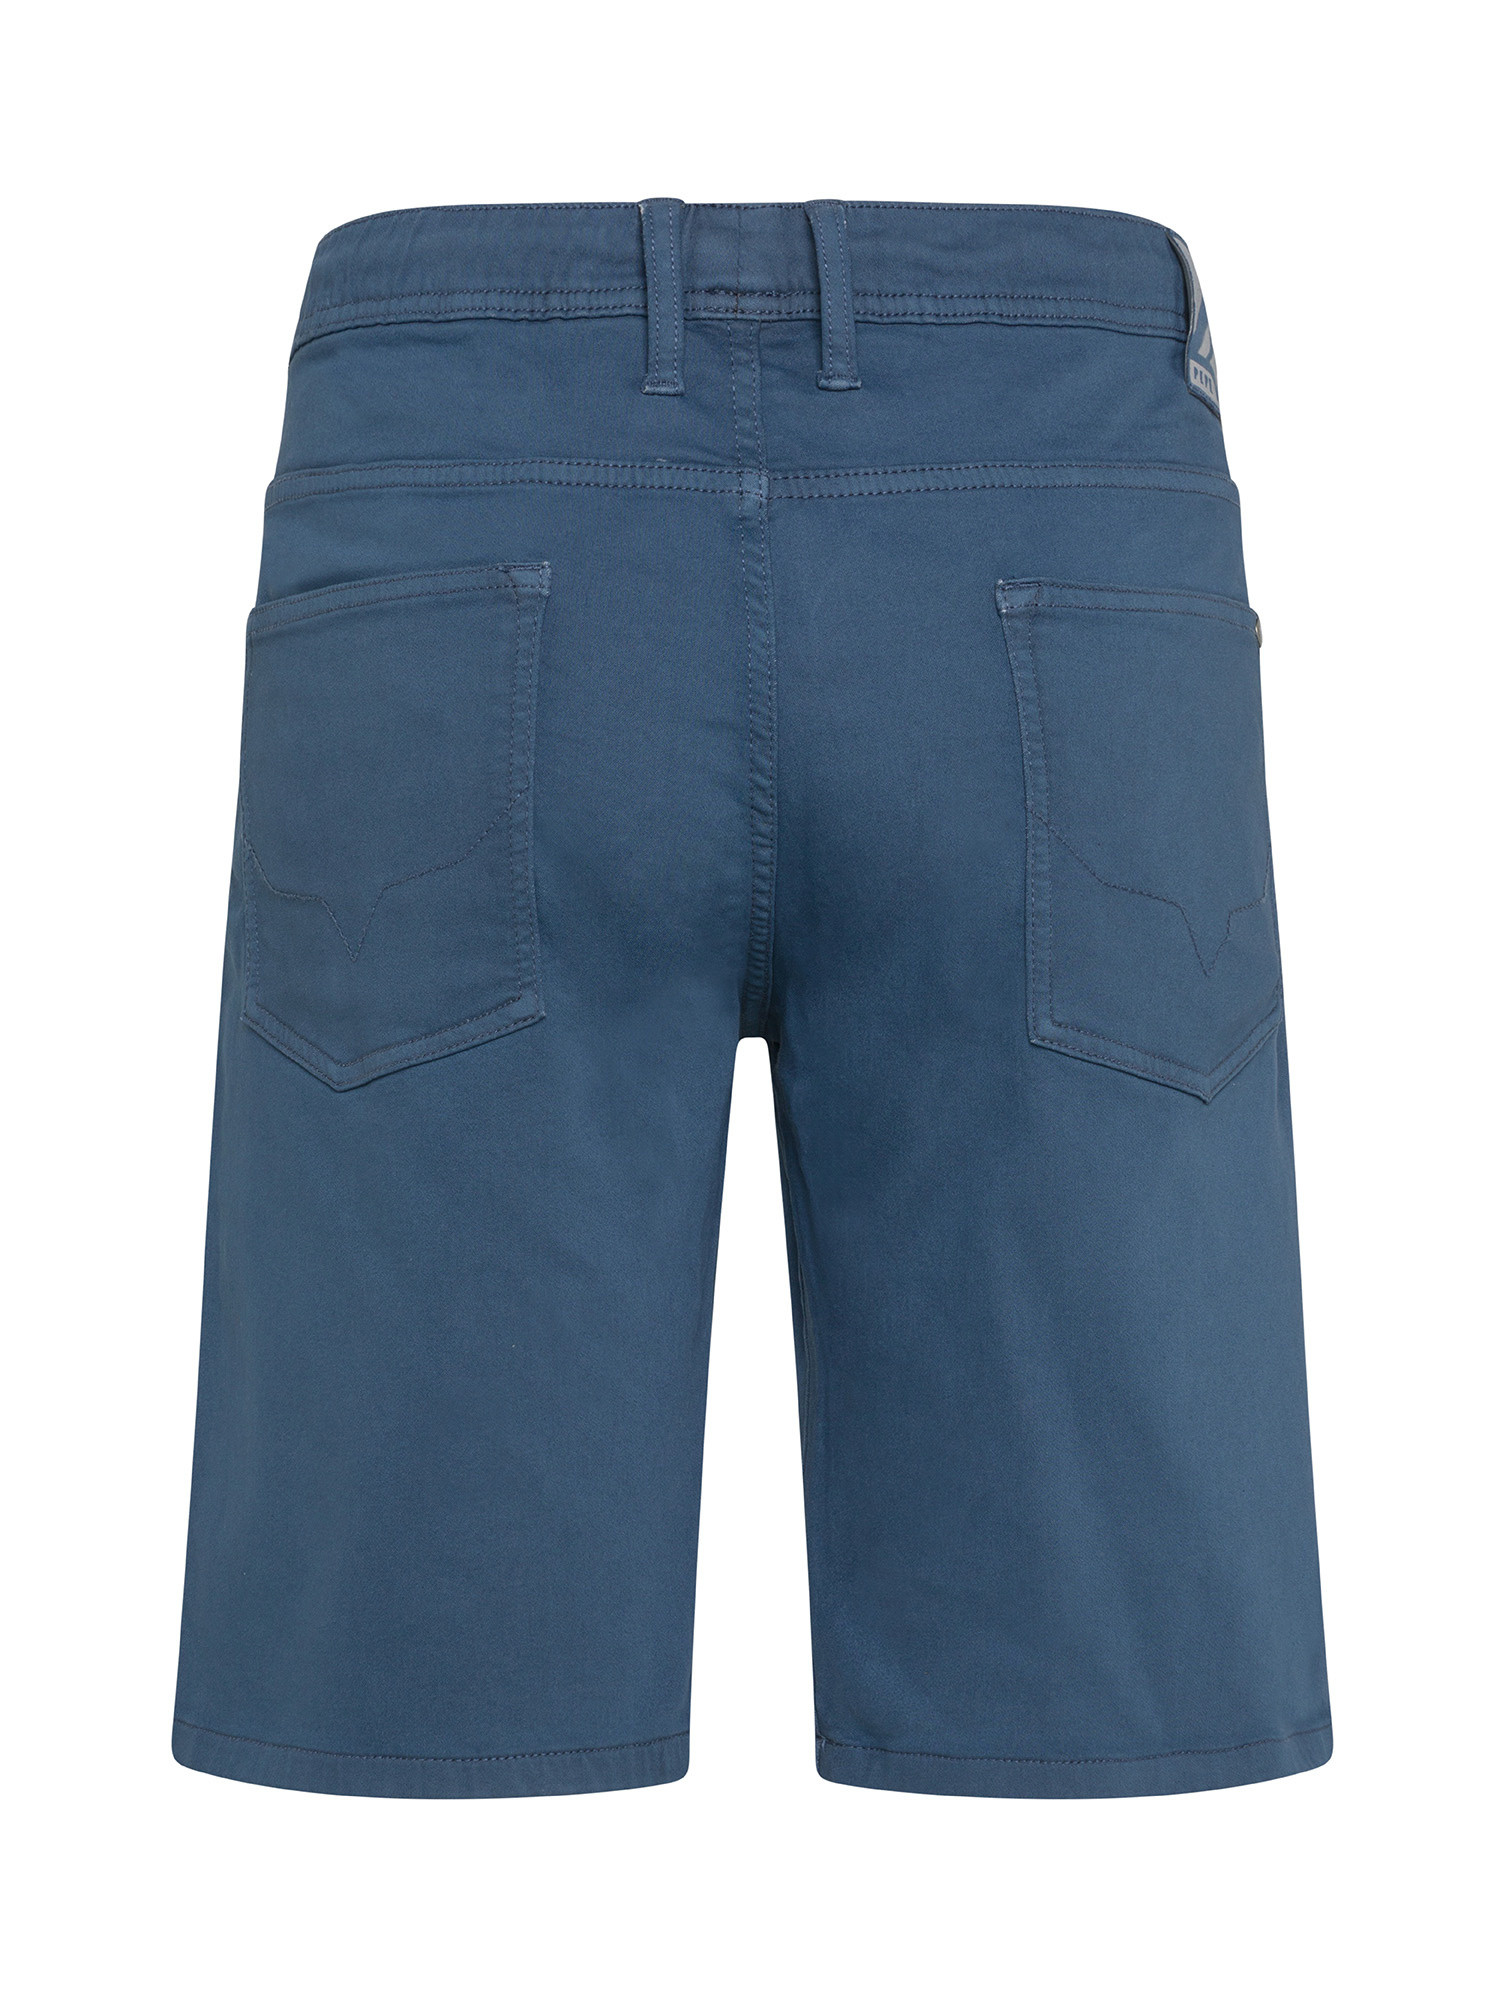 Pepe Jeans - Slim fit five pocket Bermuda shorts, Denim, large image number 1